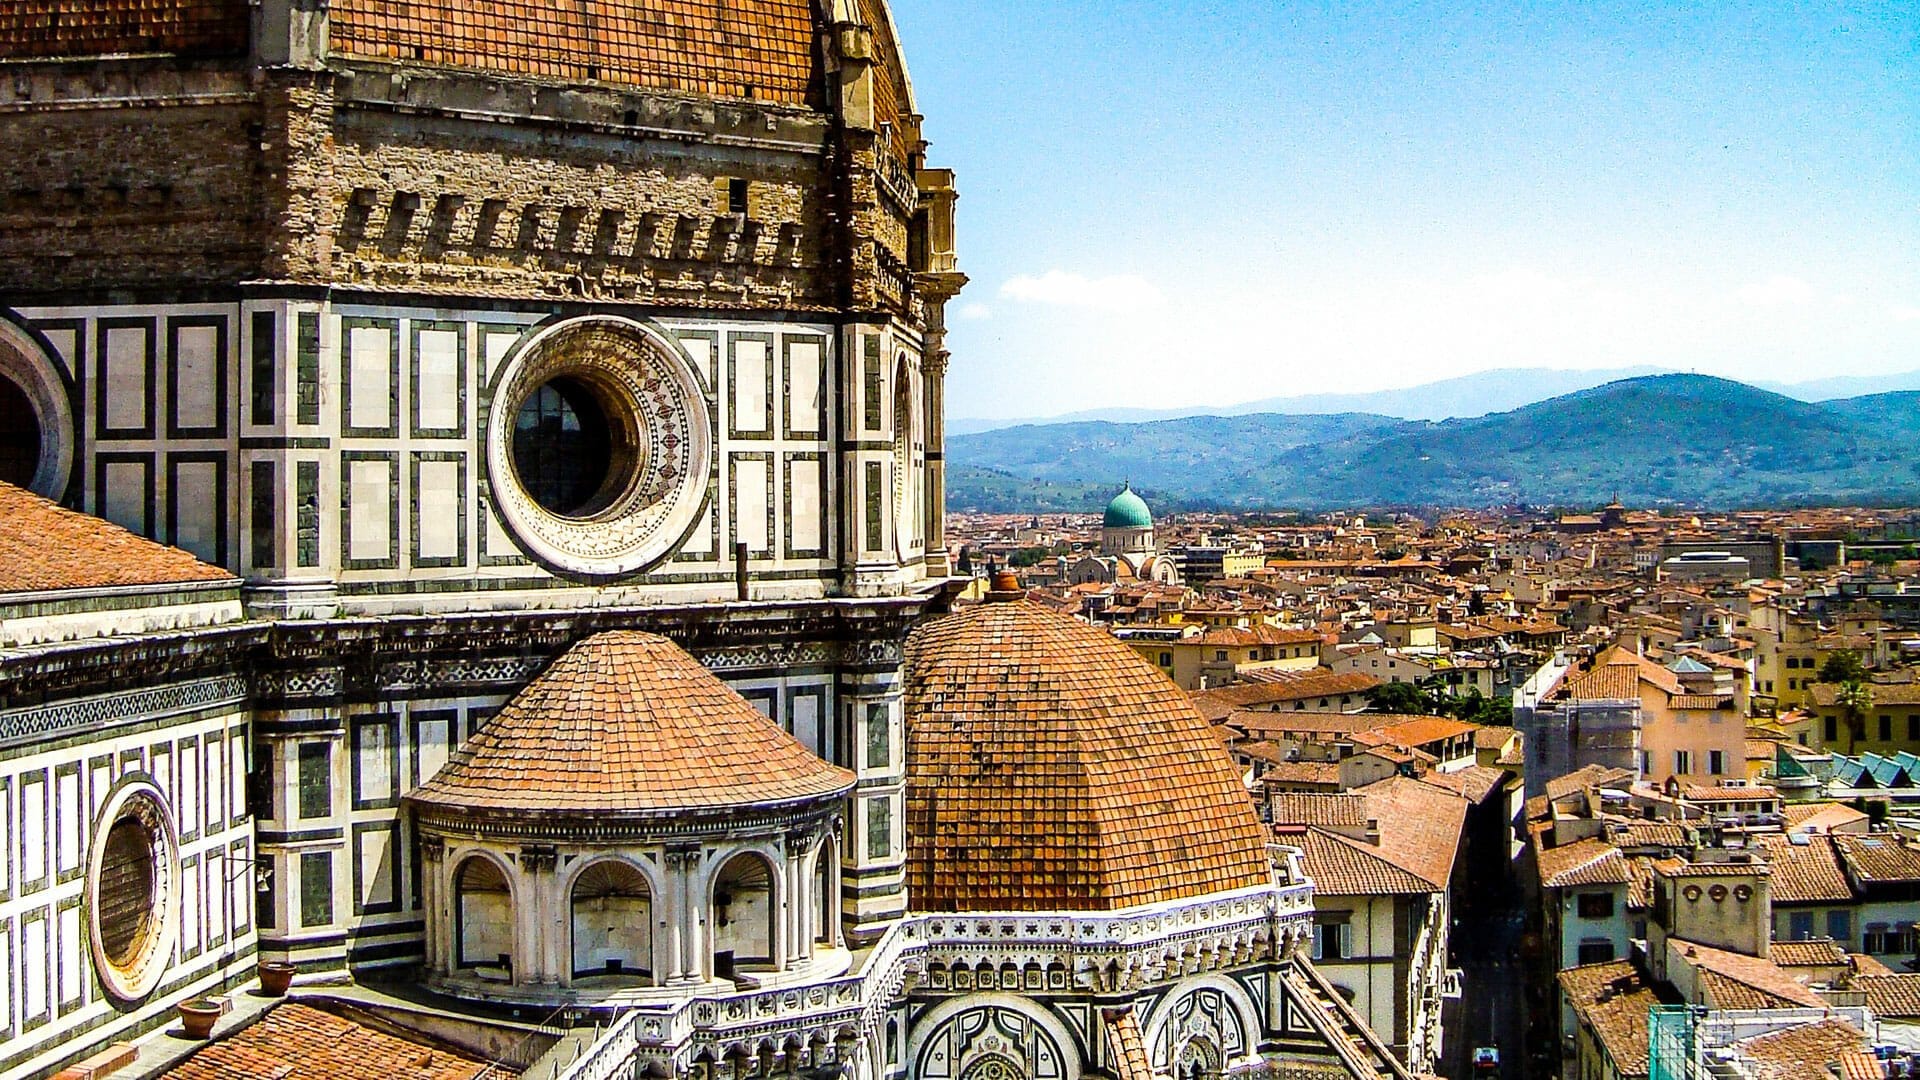 dag i Firenze 5 gode tips til oplevelser | Rejseblog om Italien